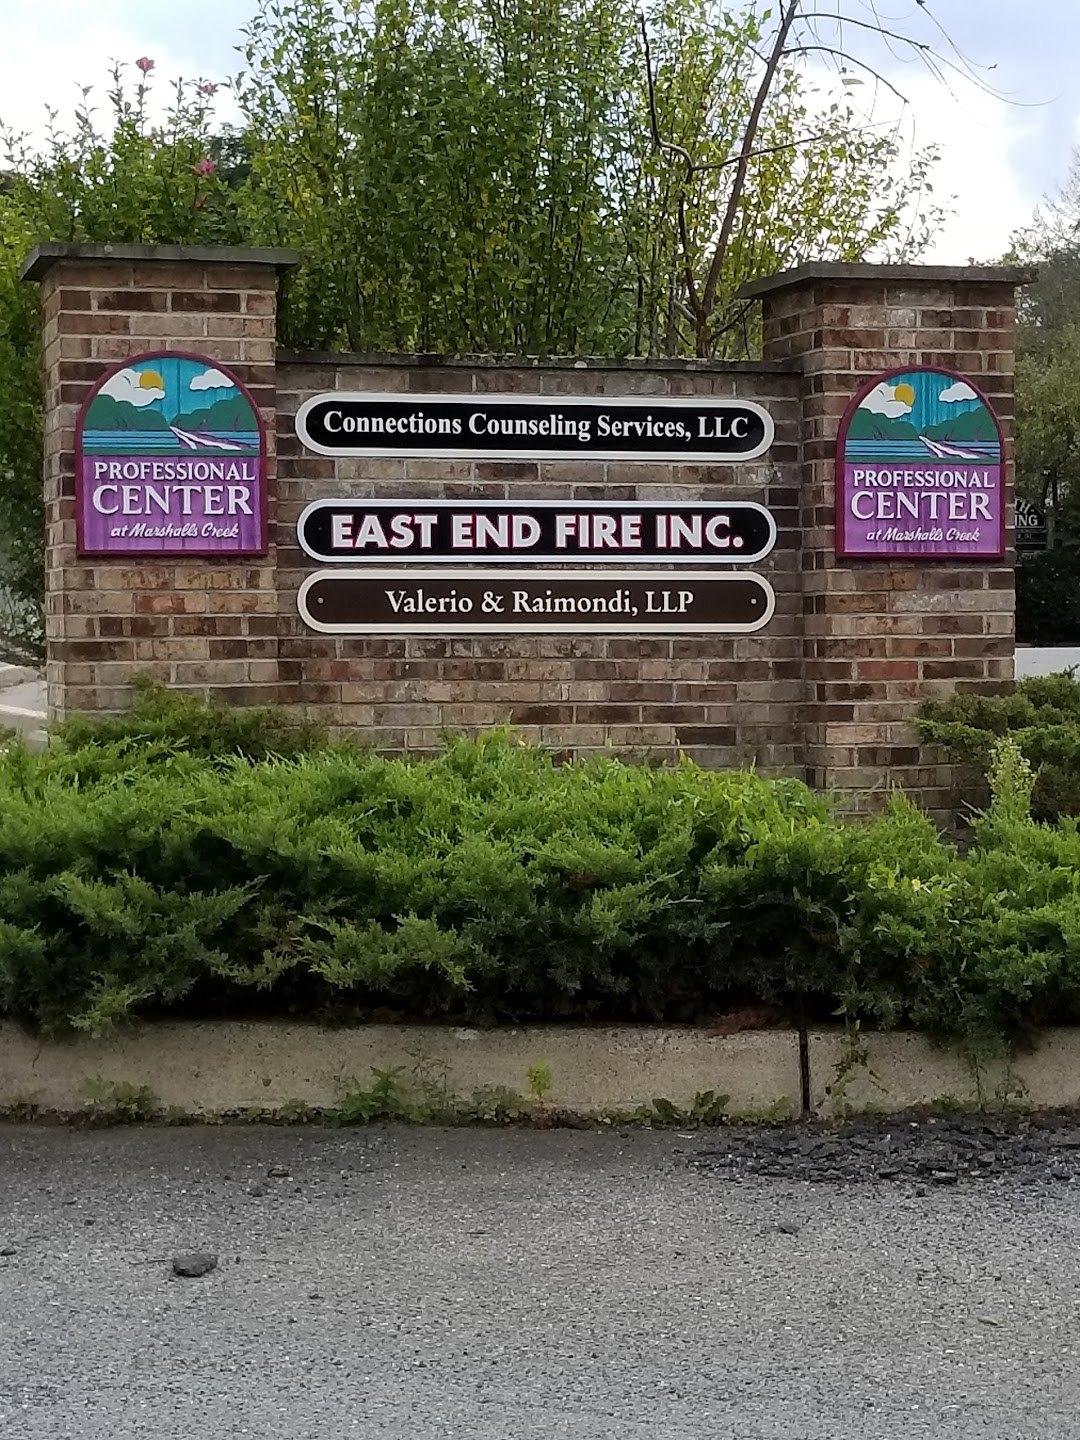 East End Fire Inc.